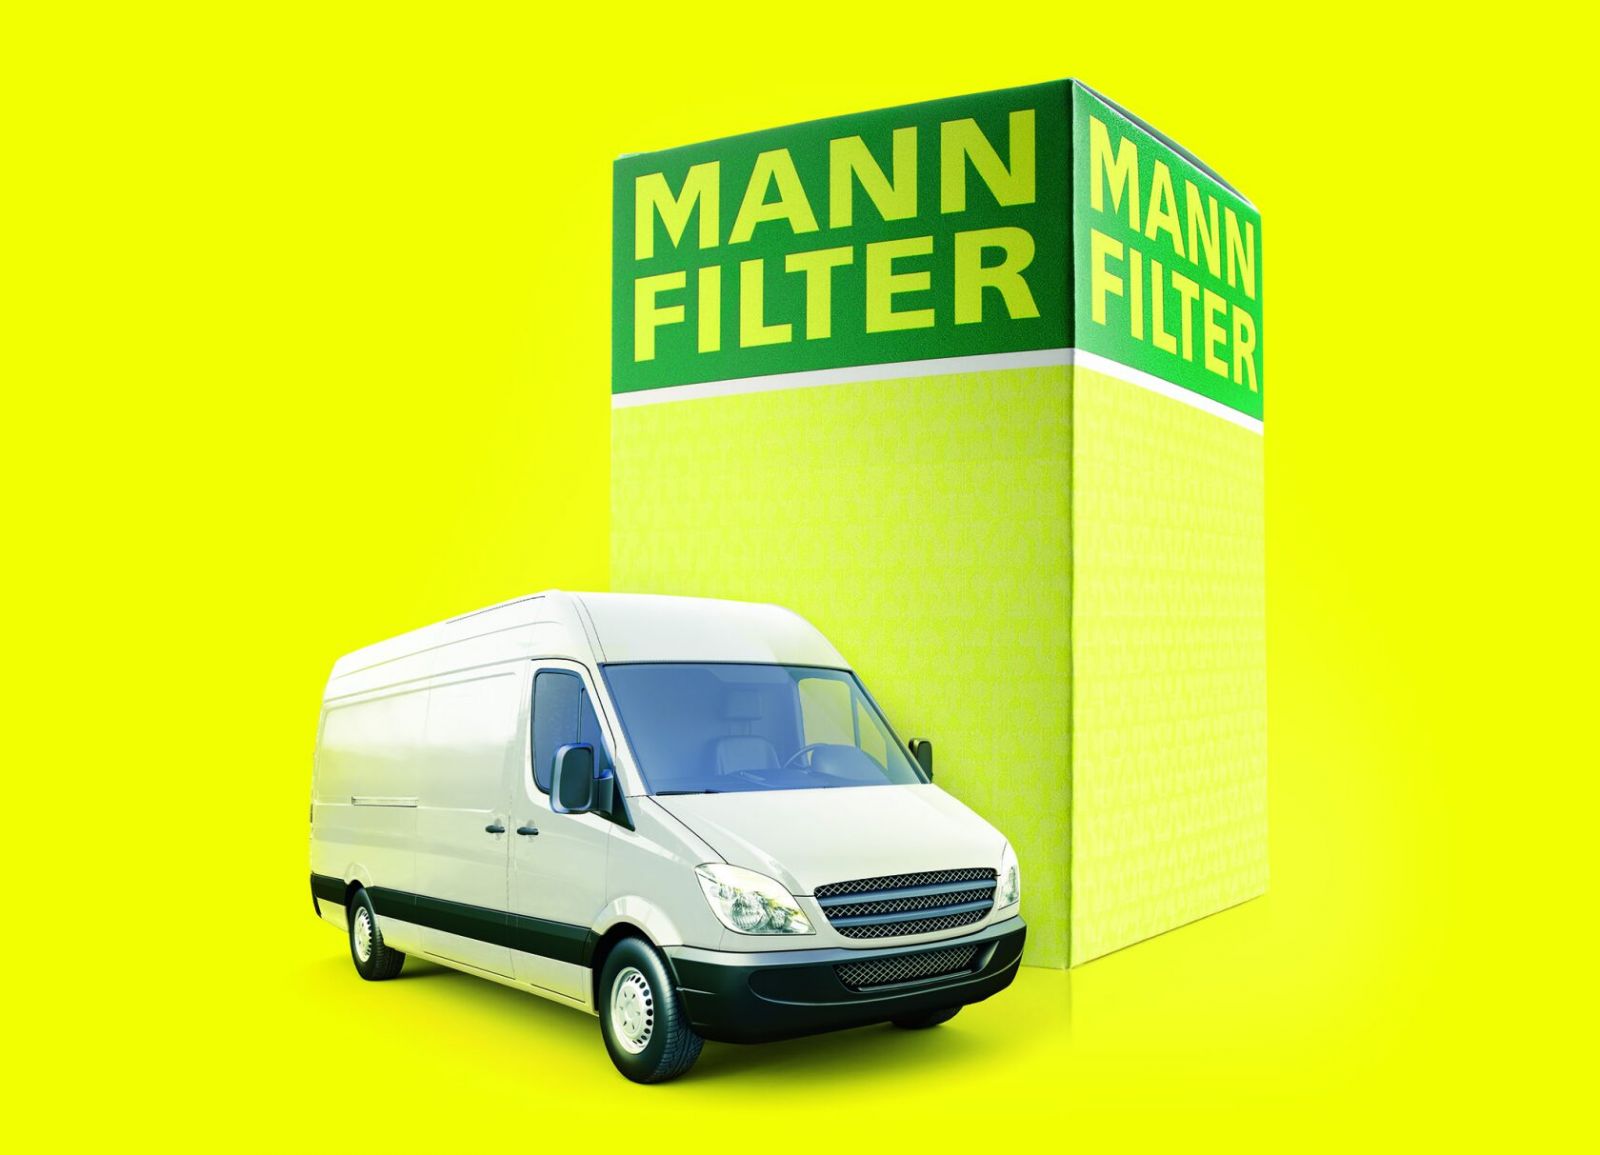 MANN-FILTER per veicoli commerciali leggeri, una gamma completa di prodotti